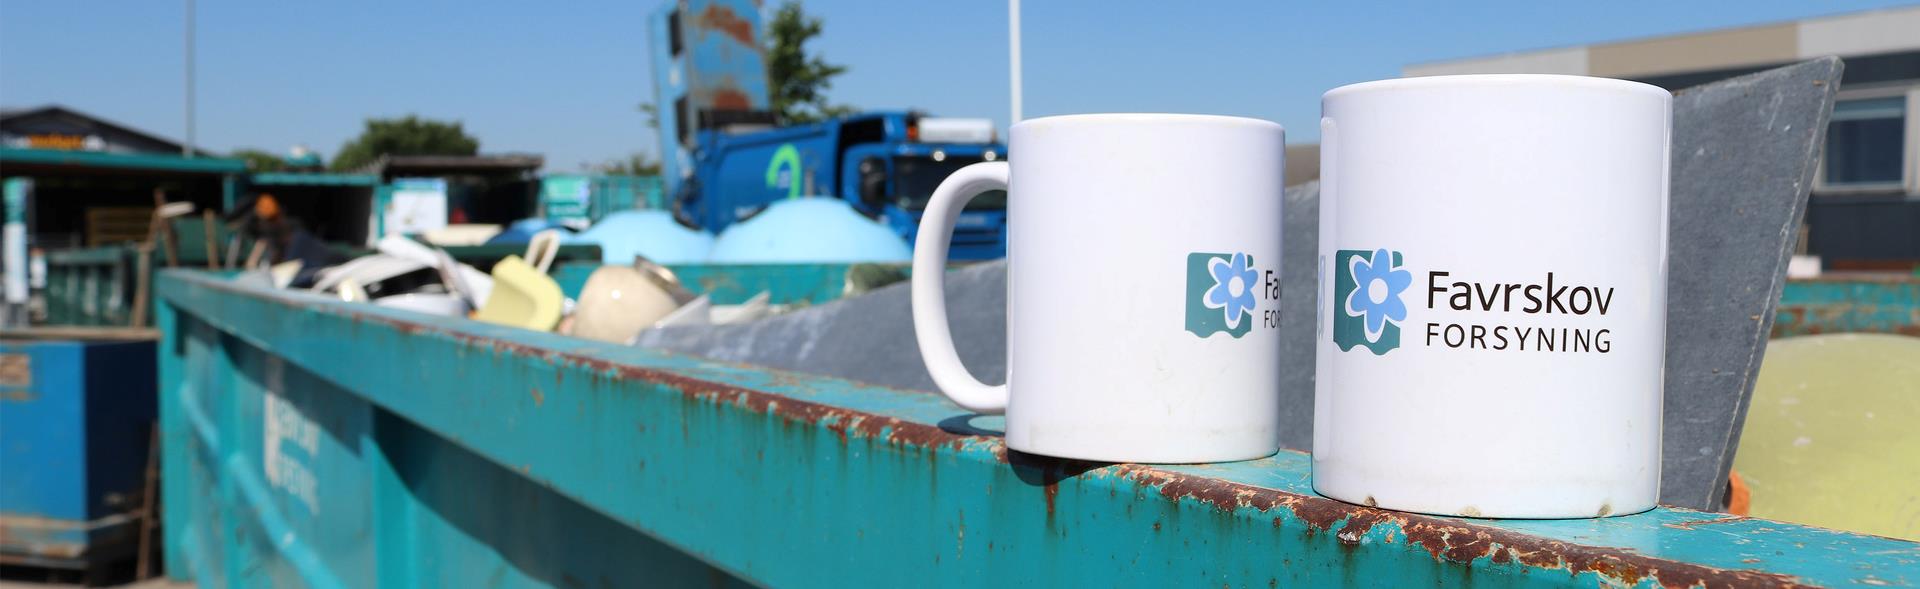 To kopper med Favrskov Forsynings logo står på kant af container på genbrugspladsen